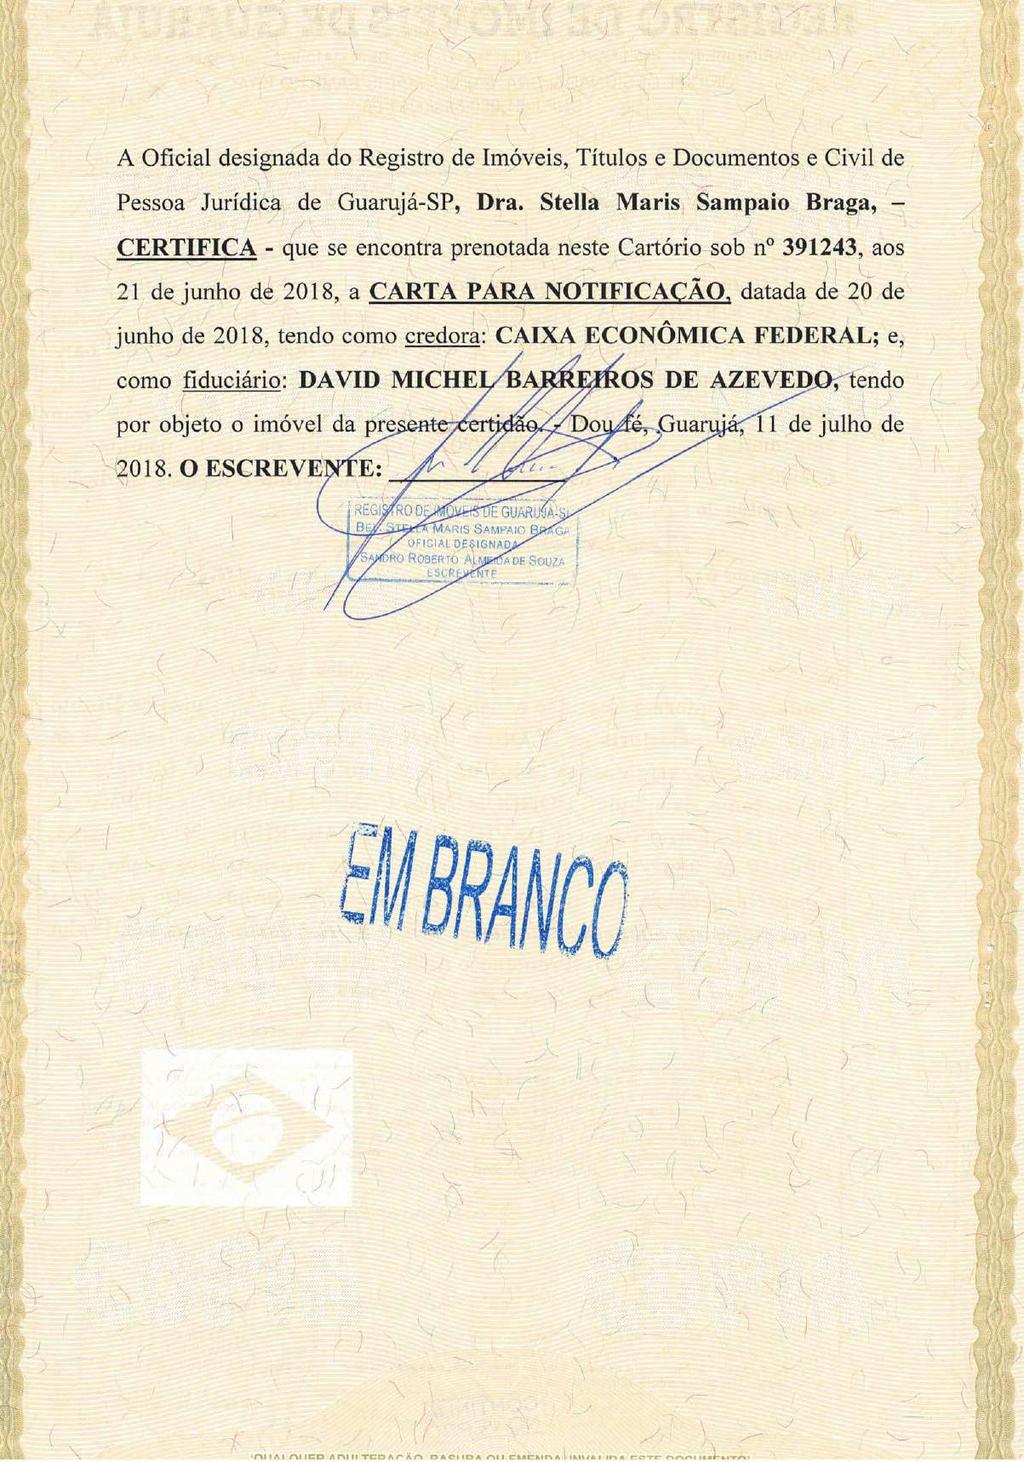 fls. 178 Este documento é cópia do original, assinado digitalmente por FERNANDO ANTONIO DE ALMEIDA MONTE e Tribunal de Justica do Estado de Sao Paulo, protocolado em 13/07/2018 às 12:20, sob o